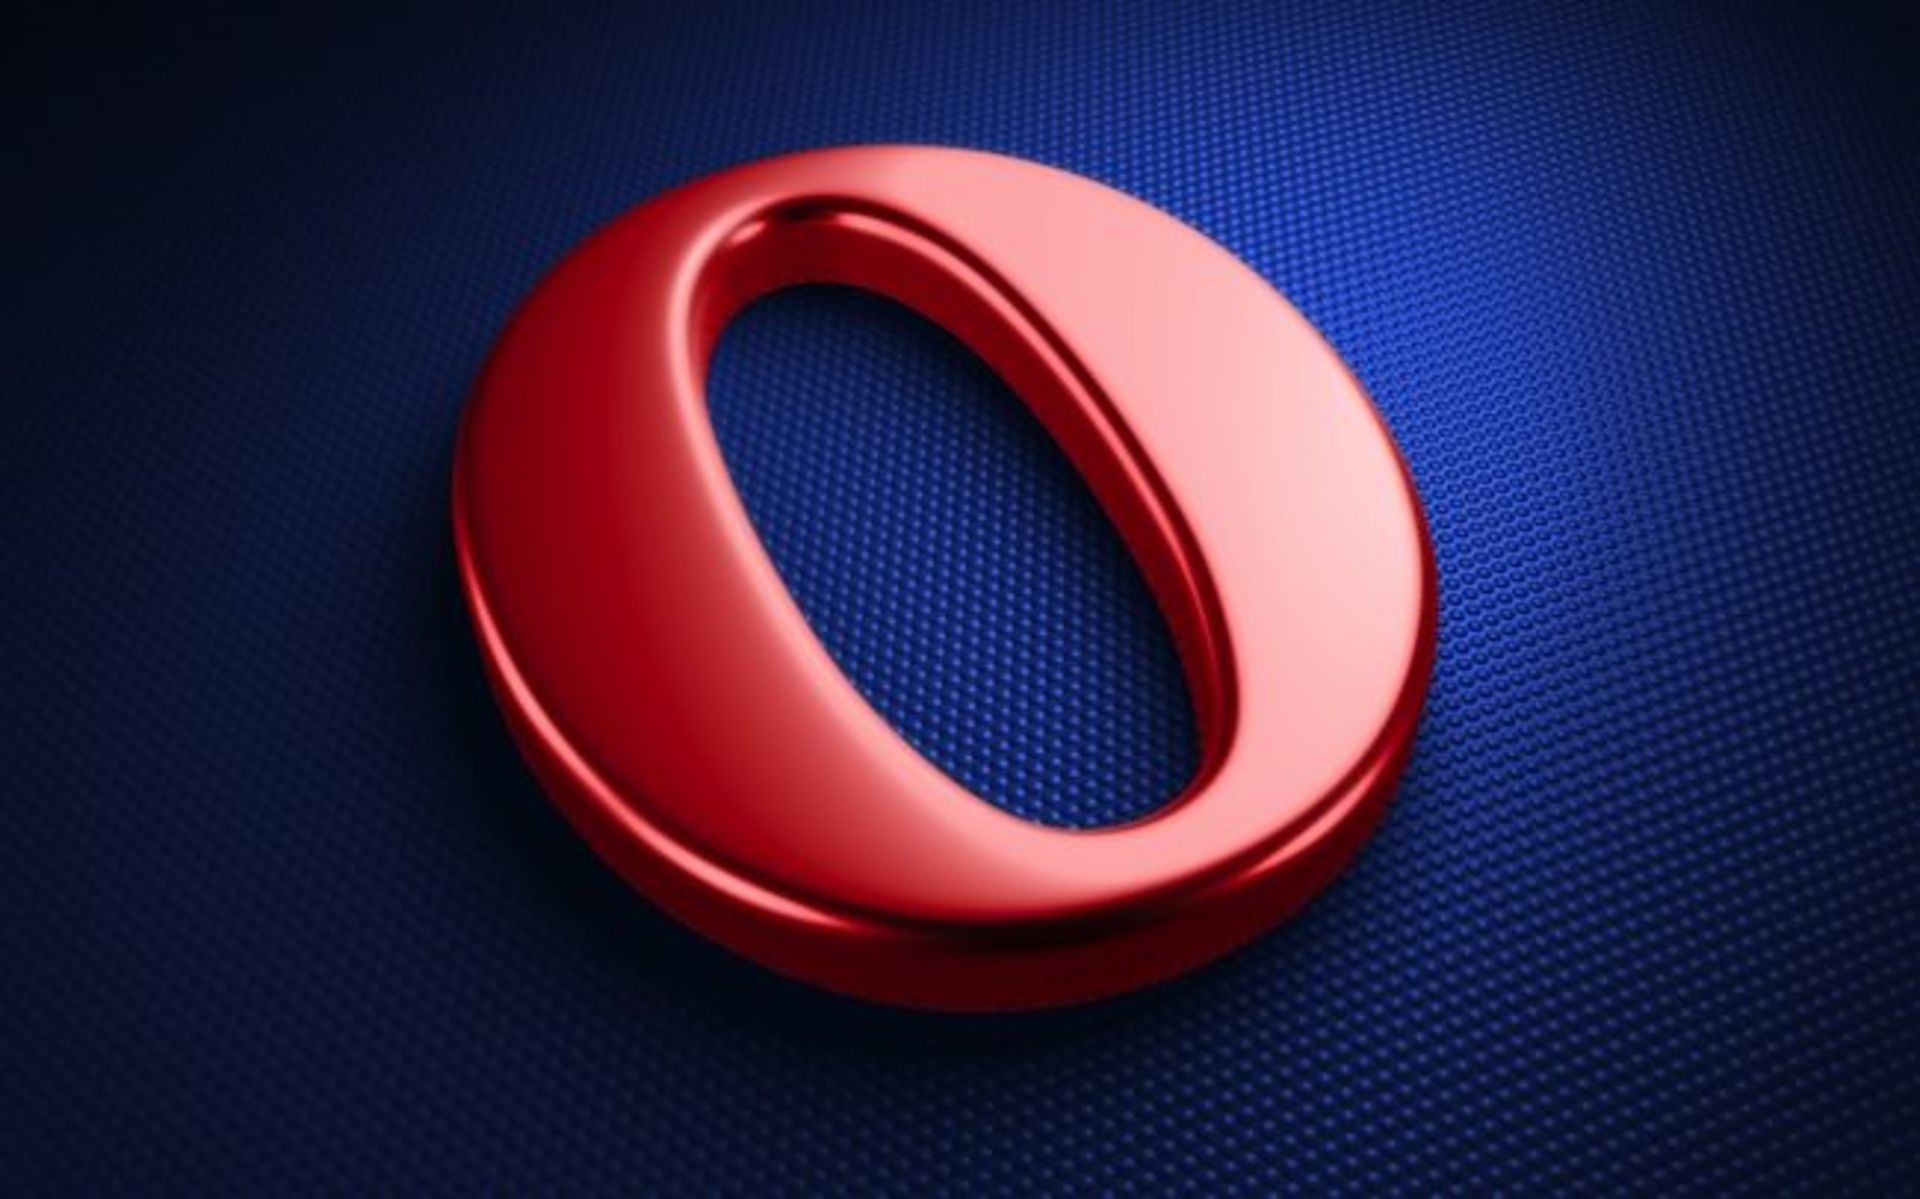 Opera-Browser-Logo